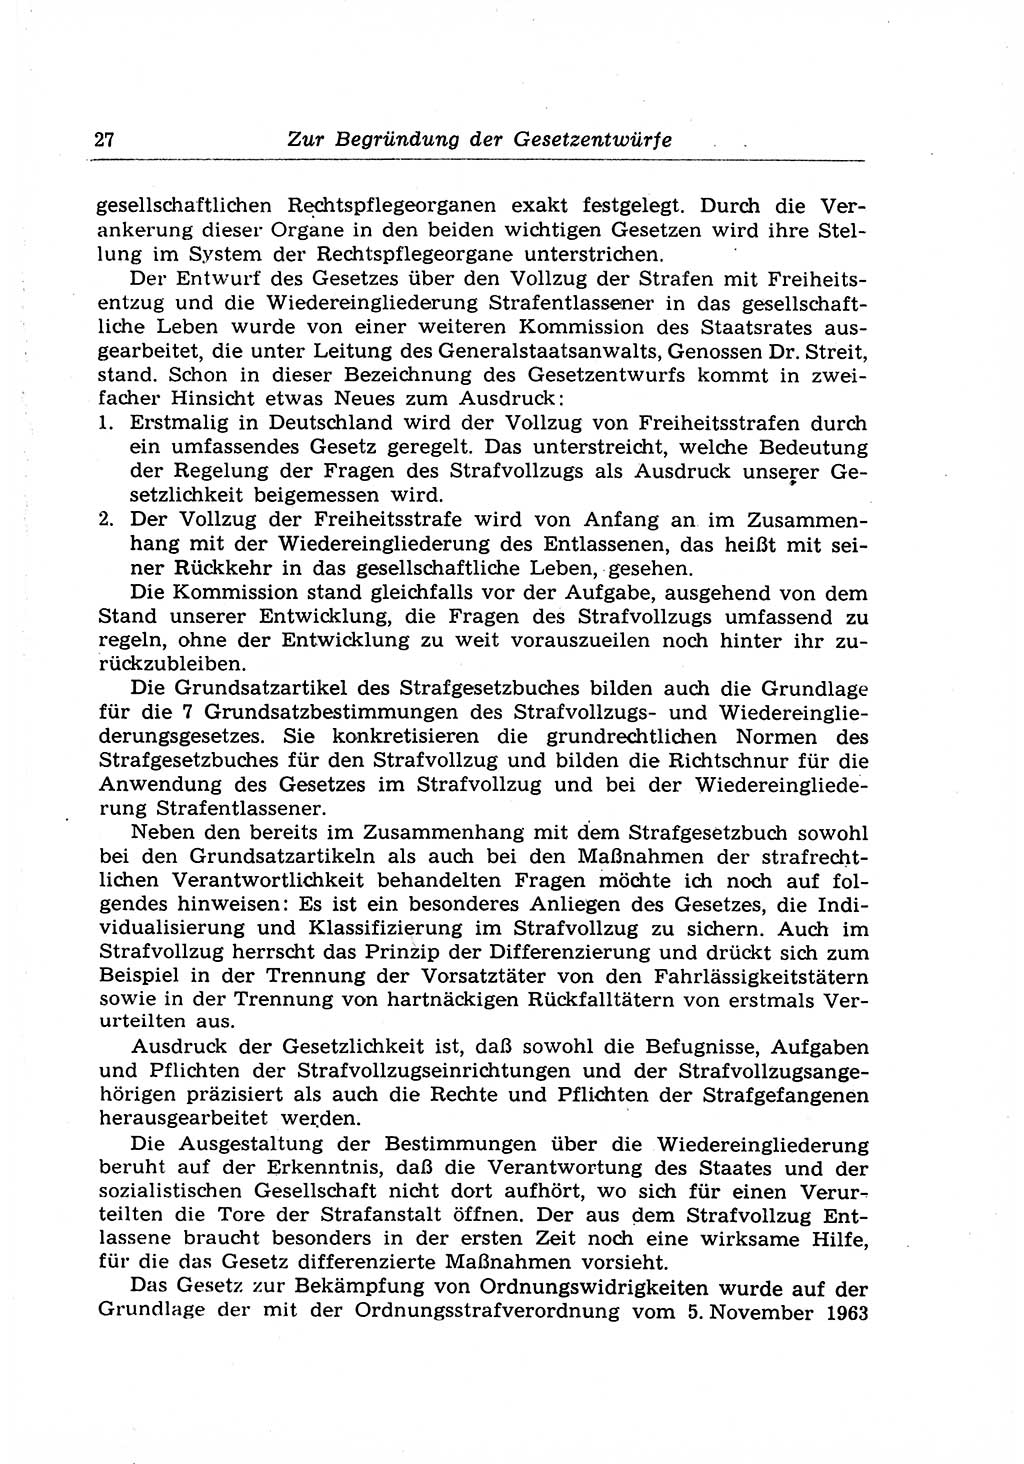 Strafrecht der Deutschen Demokratischen Republik (DDR), Lehrkommentar zum Strafgesetzbuch (StGB), Allgemeiner Teil 1969, Seite 27 (Strafr. DDR Lehrkomm. StGB AT 1969, S. 27)